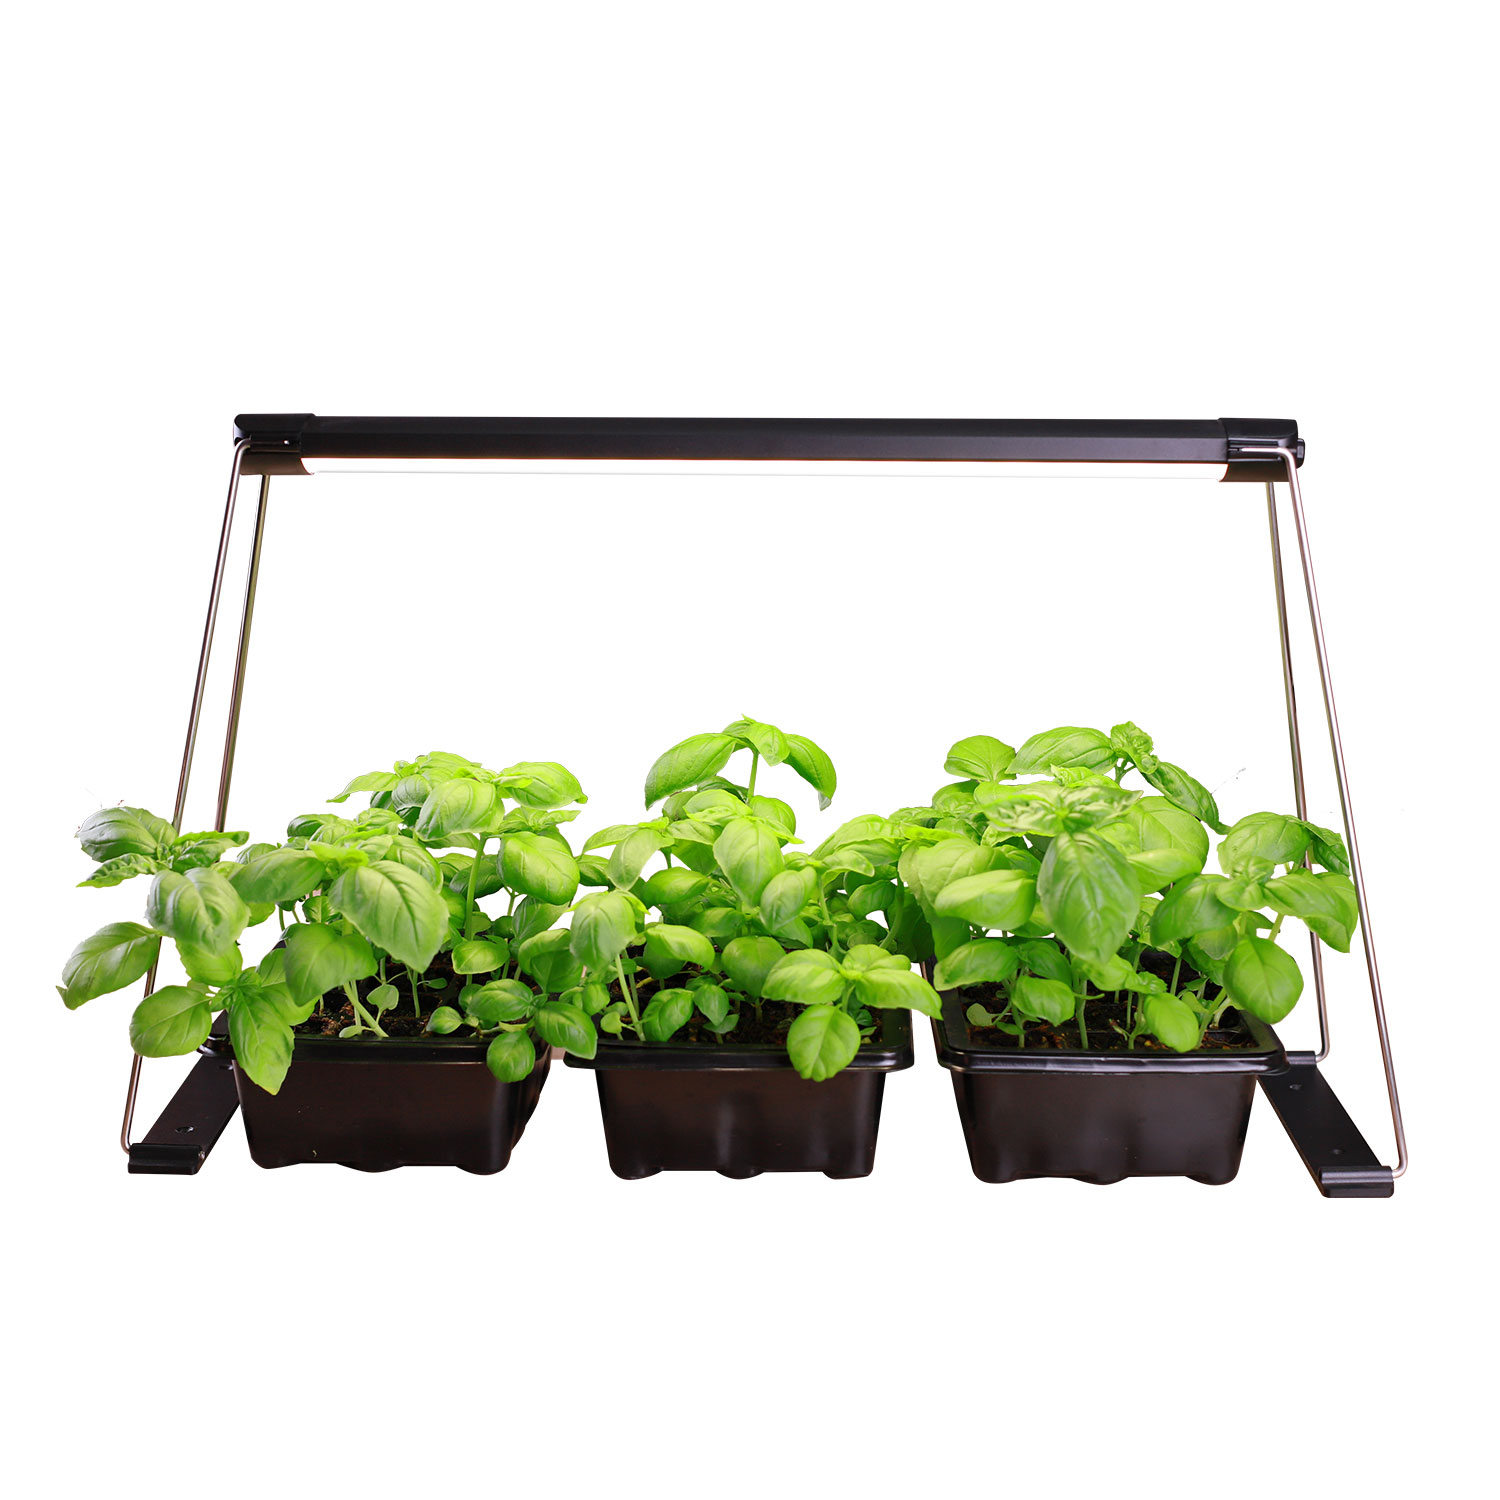 TG101 mini garden indoor herb garden starter kit plant light for succulents